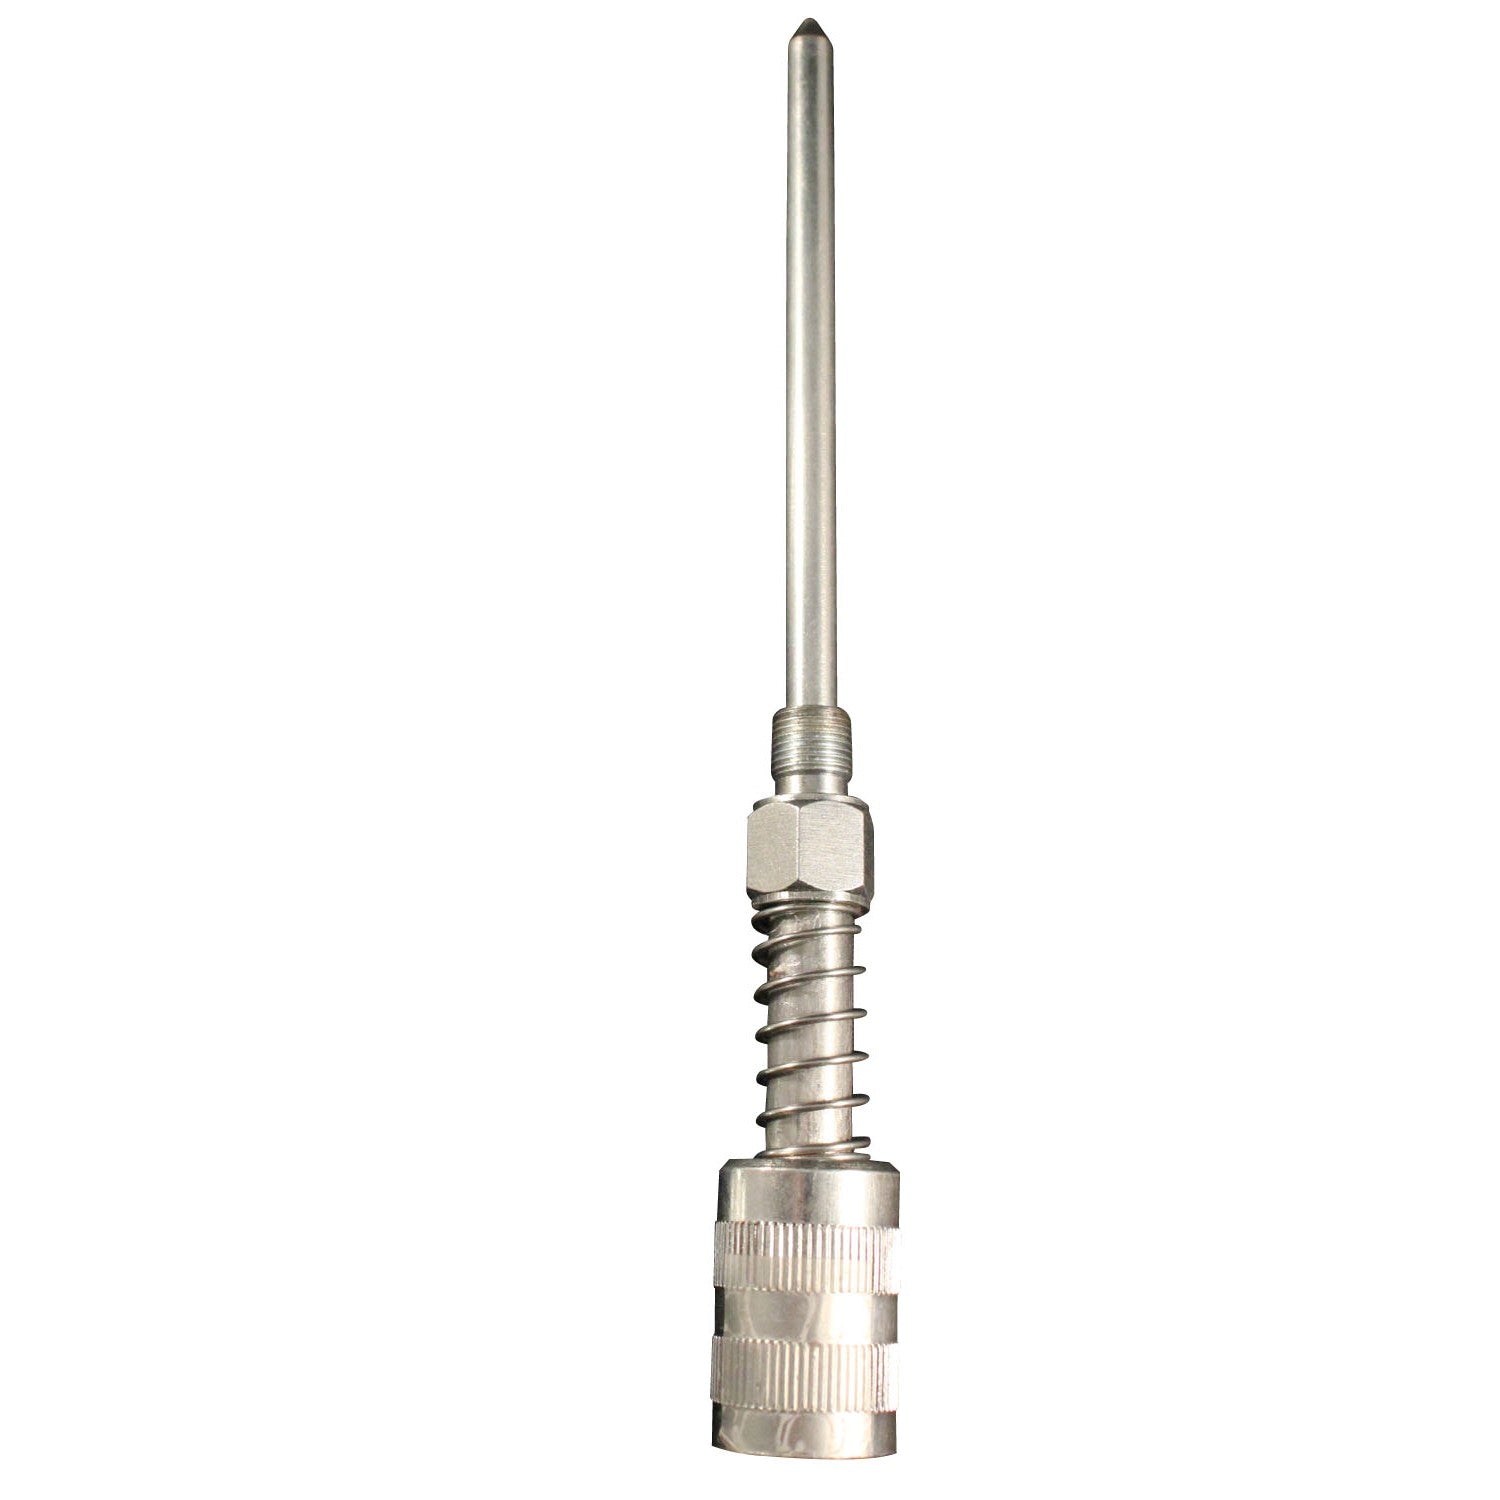 Perkin Elmer US LLC Swagelok Brass Male Adapter - 0.25 in x 0.125 in Male